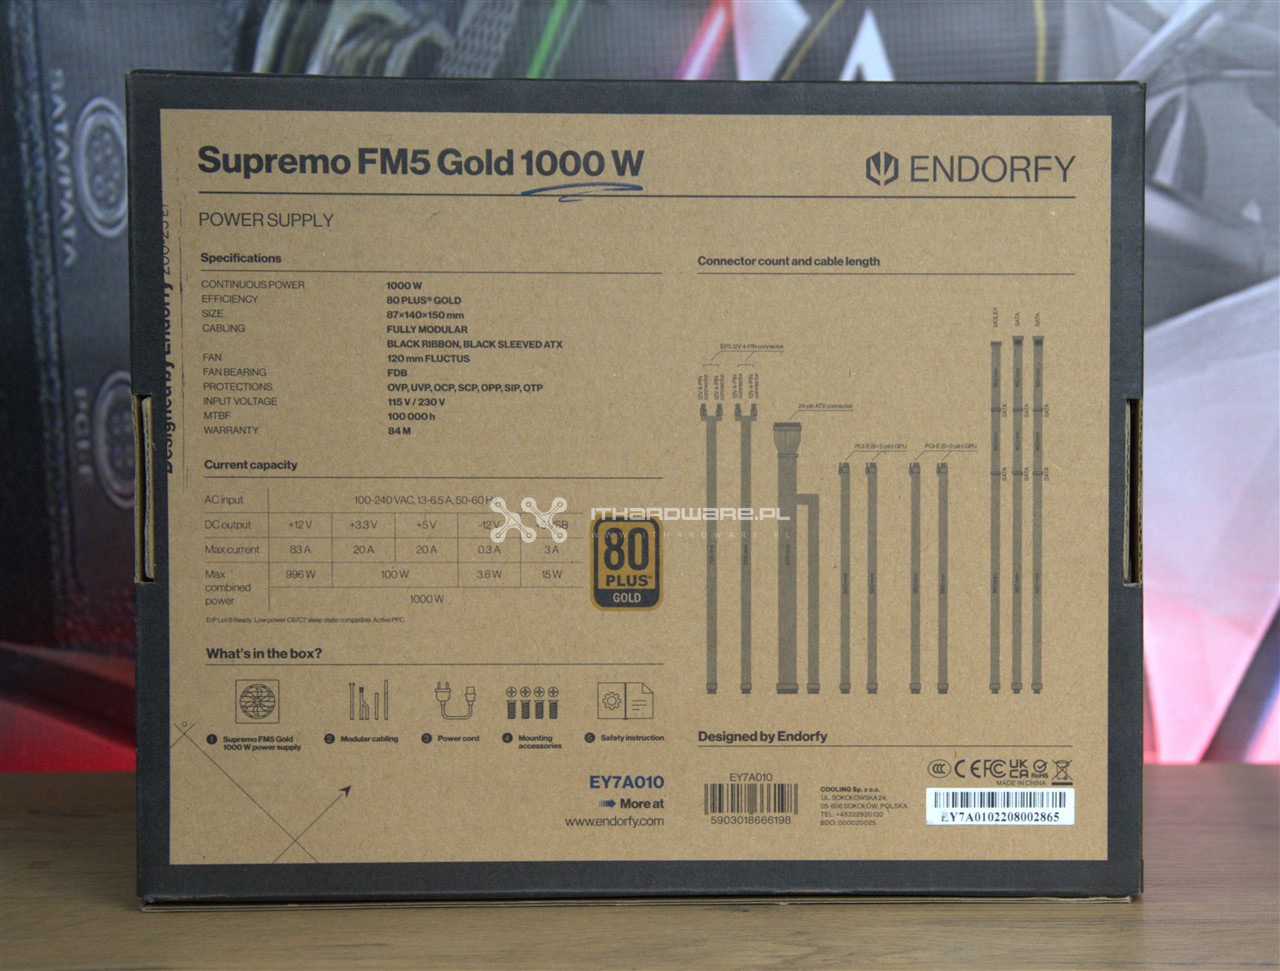 ENDORFY Supremo FM5 Gold 1000 W